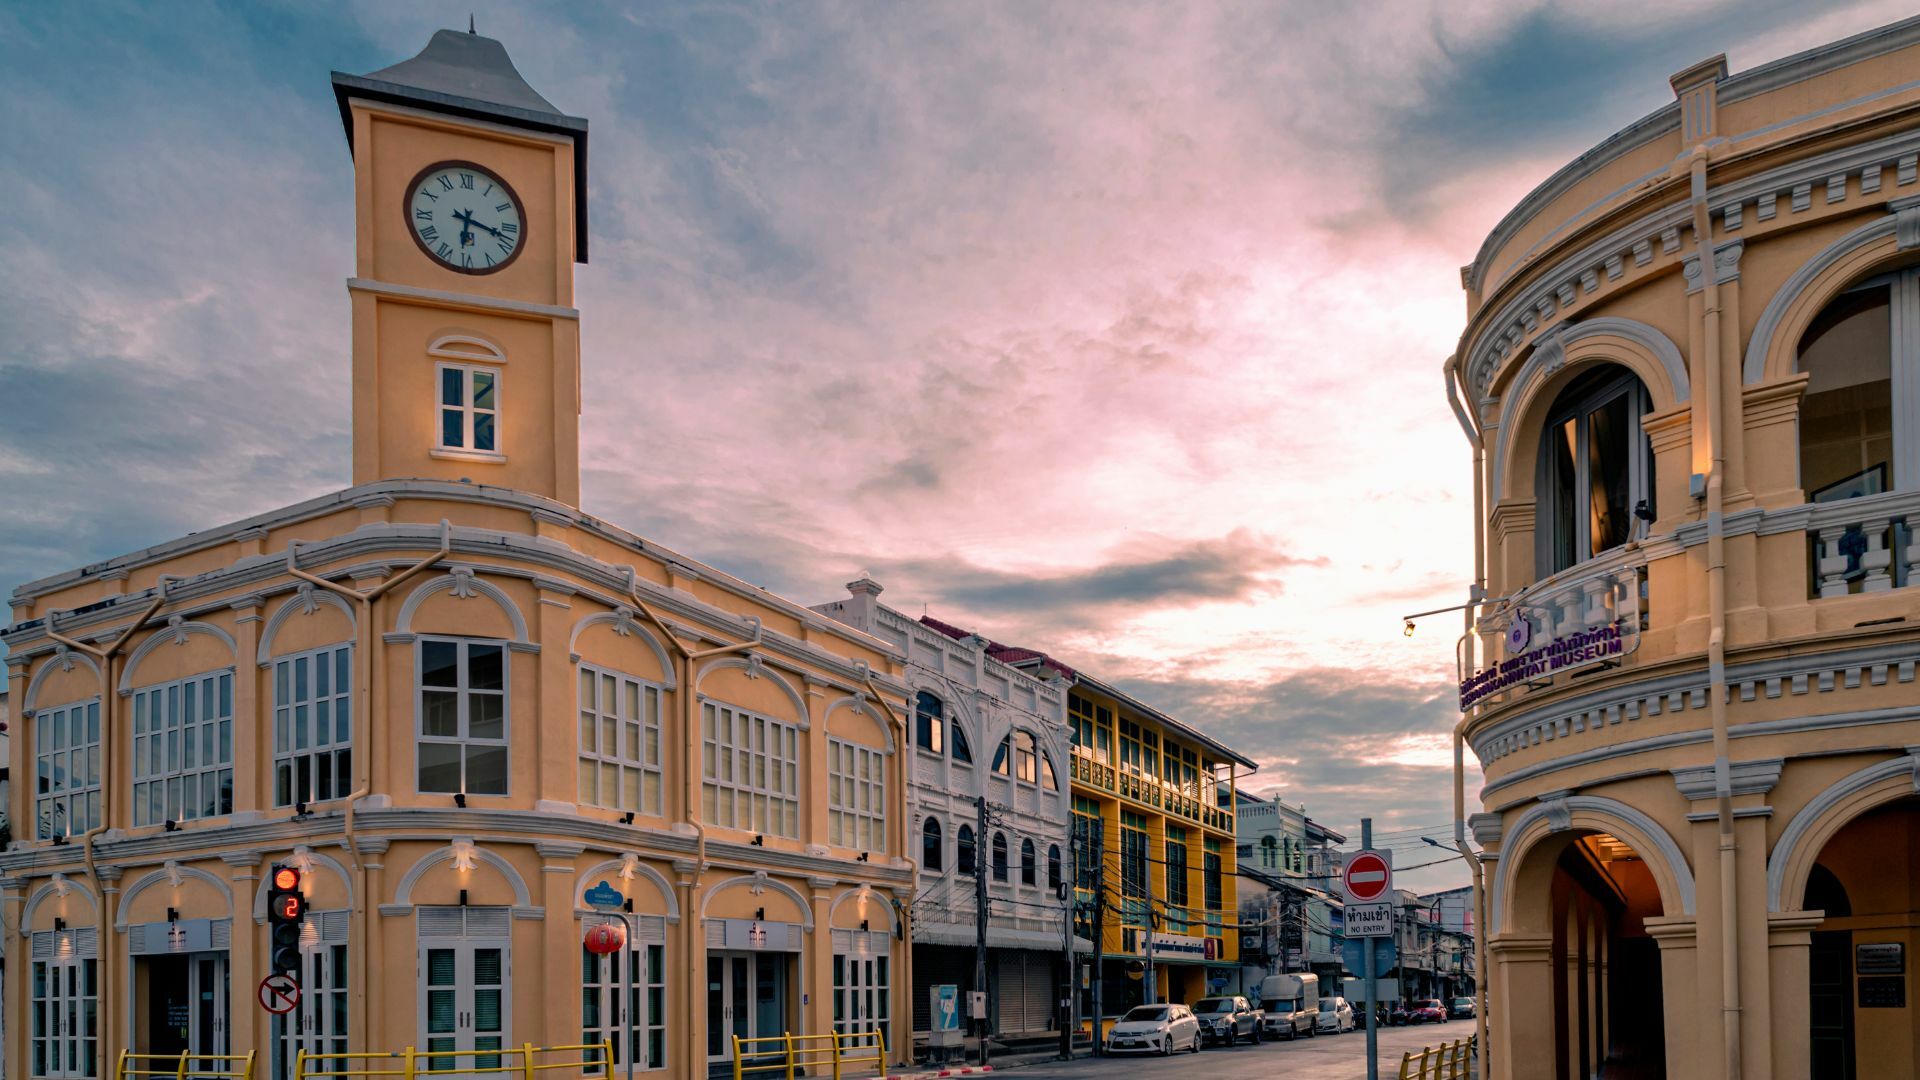 Image of Phuket Old Town